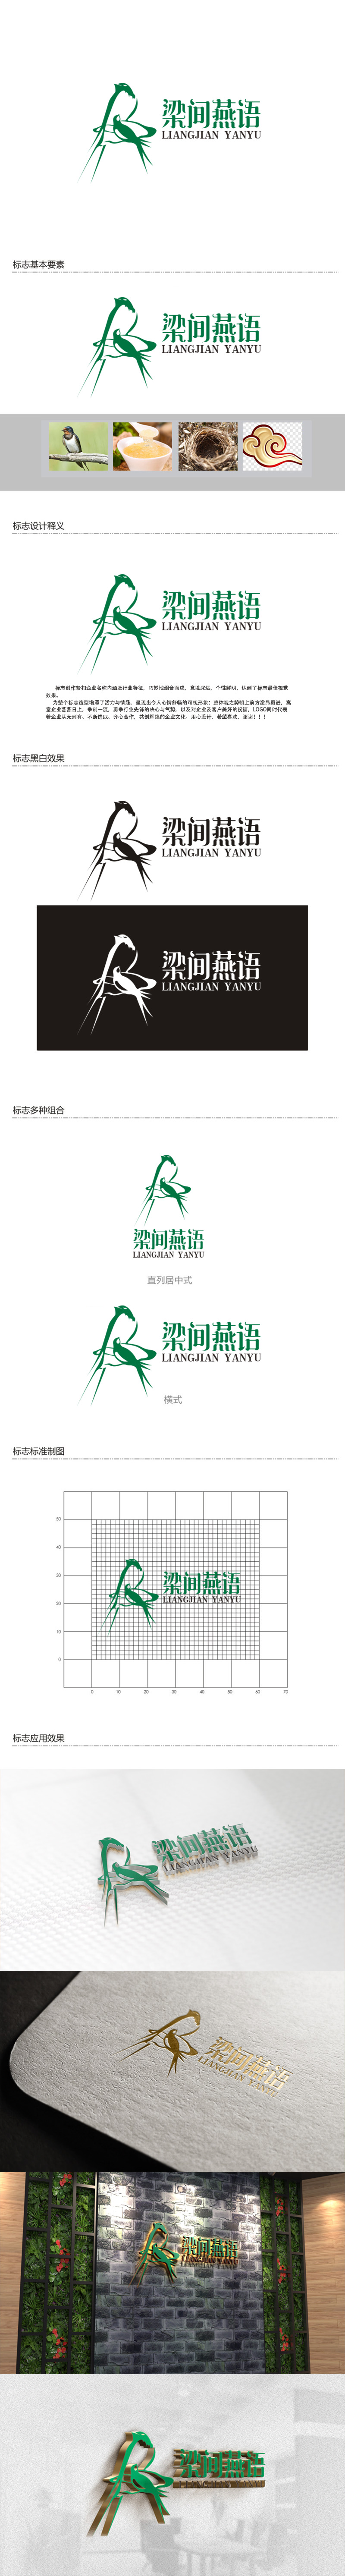 秦晓东的梁间燕语食品销售logo设计